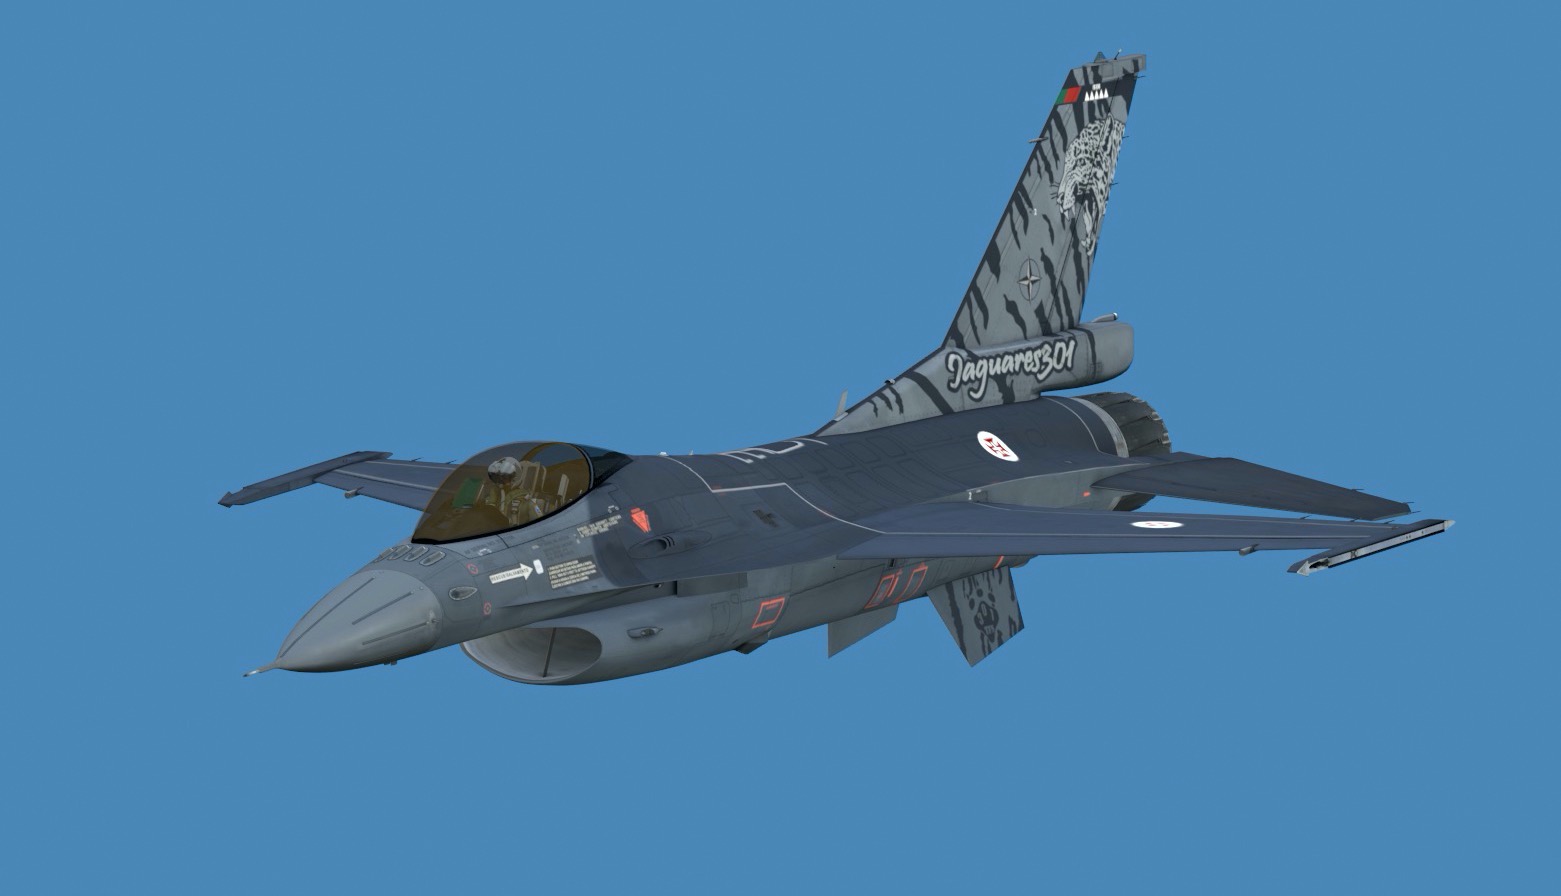 Portuguese Air Force - Jaguares 301